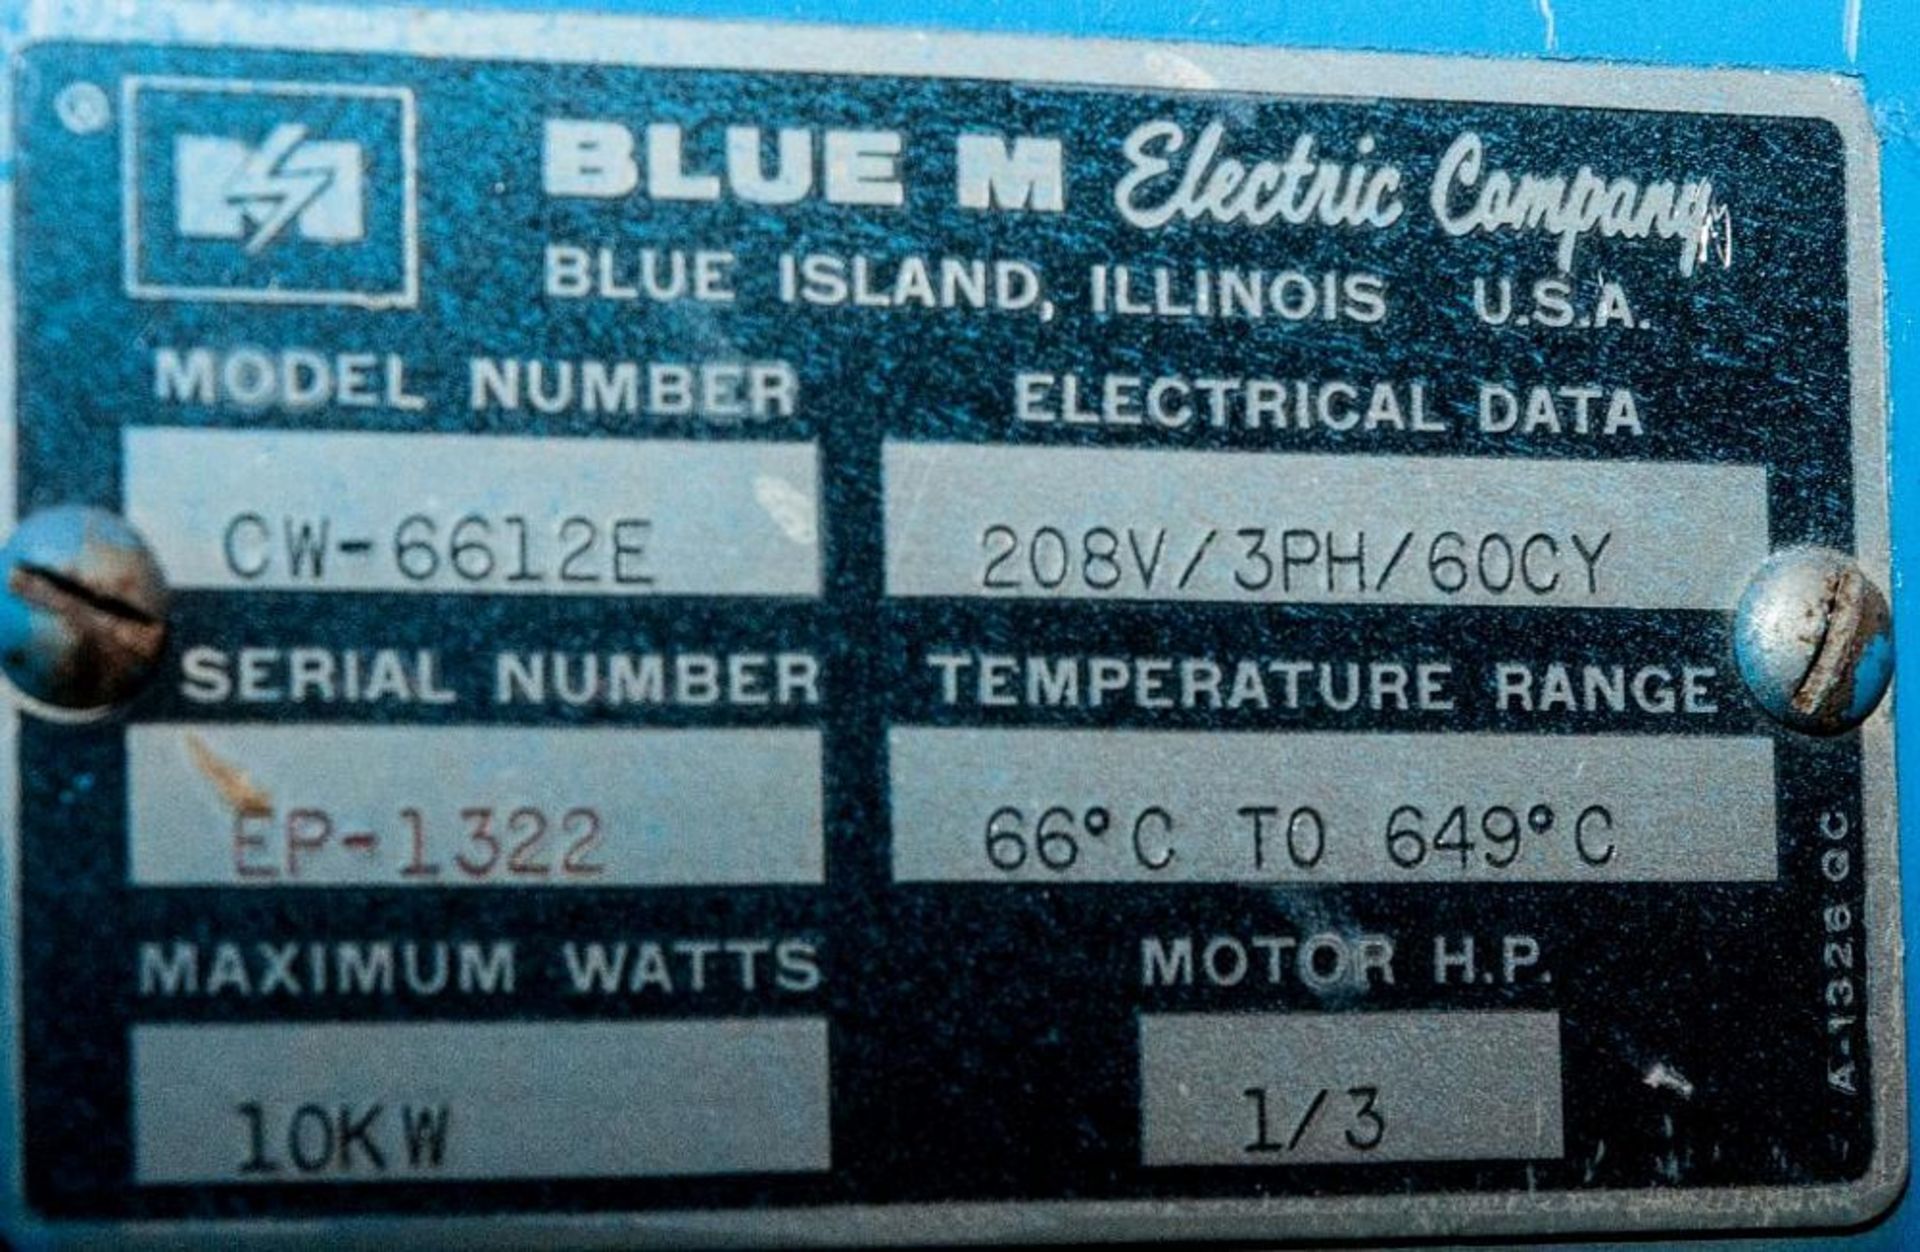 Blue M Oven Model CW-6612E, s/n EP-1322, 10kw, 1/3 hp, 208v 3ph. - Image 2 of 3